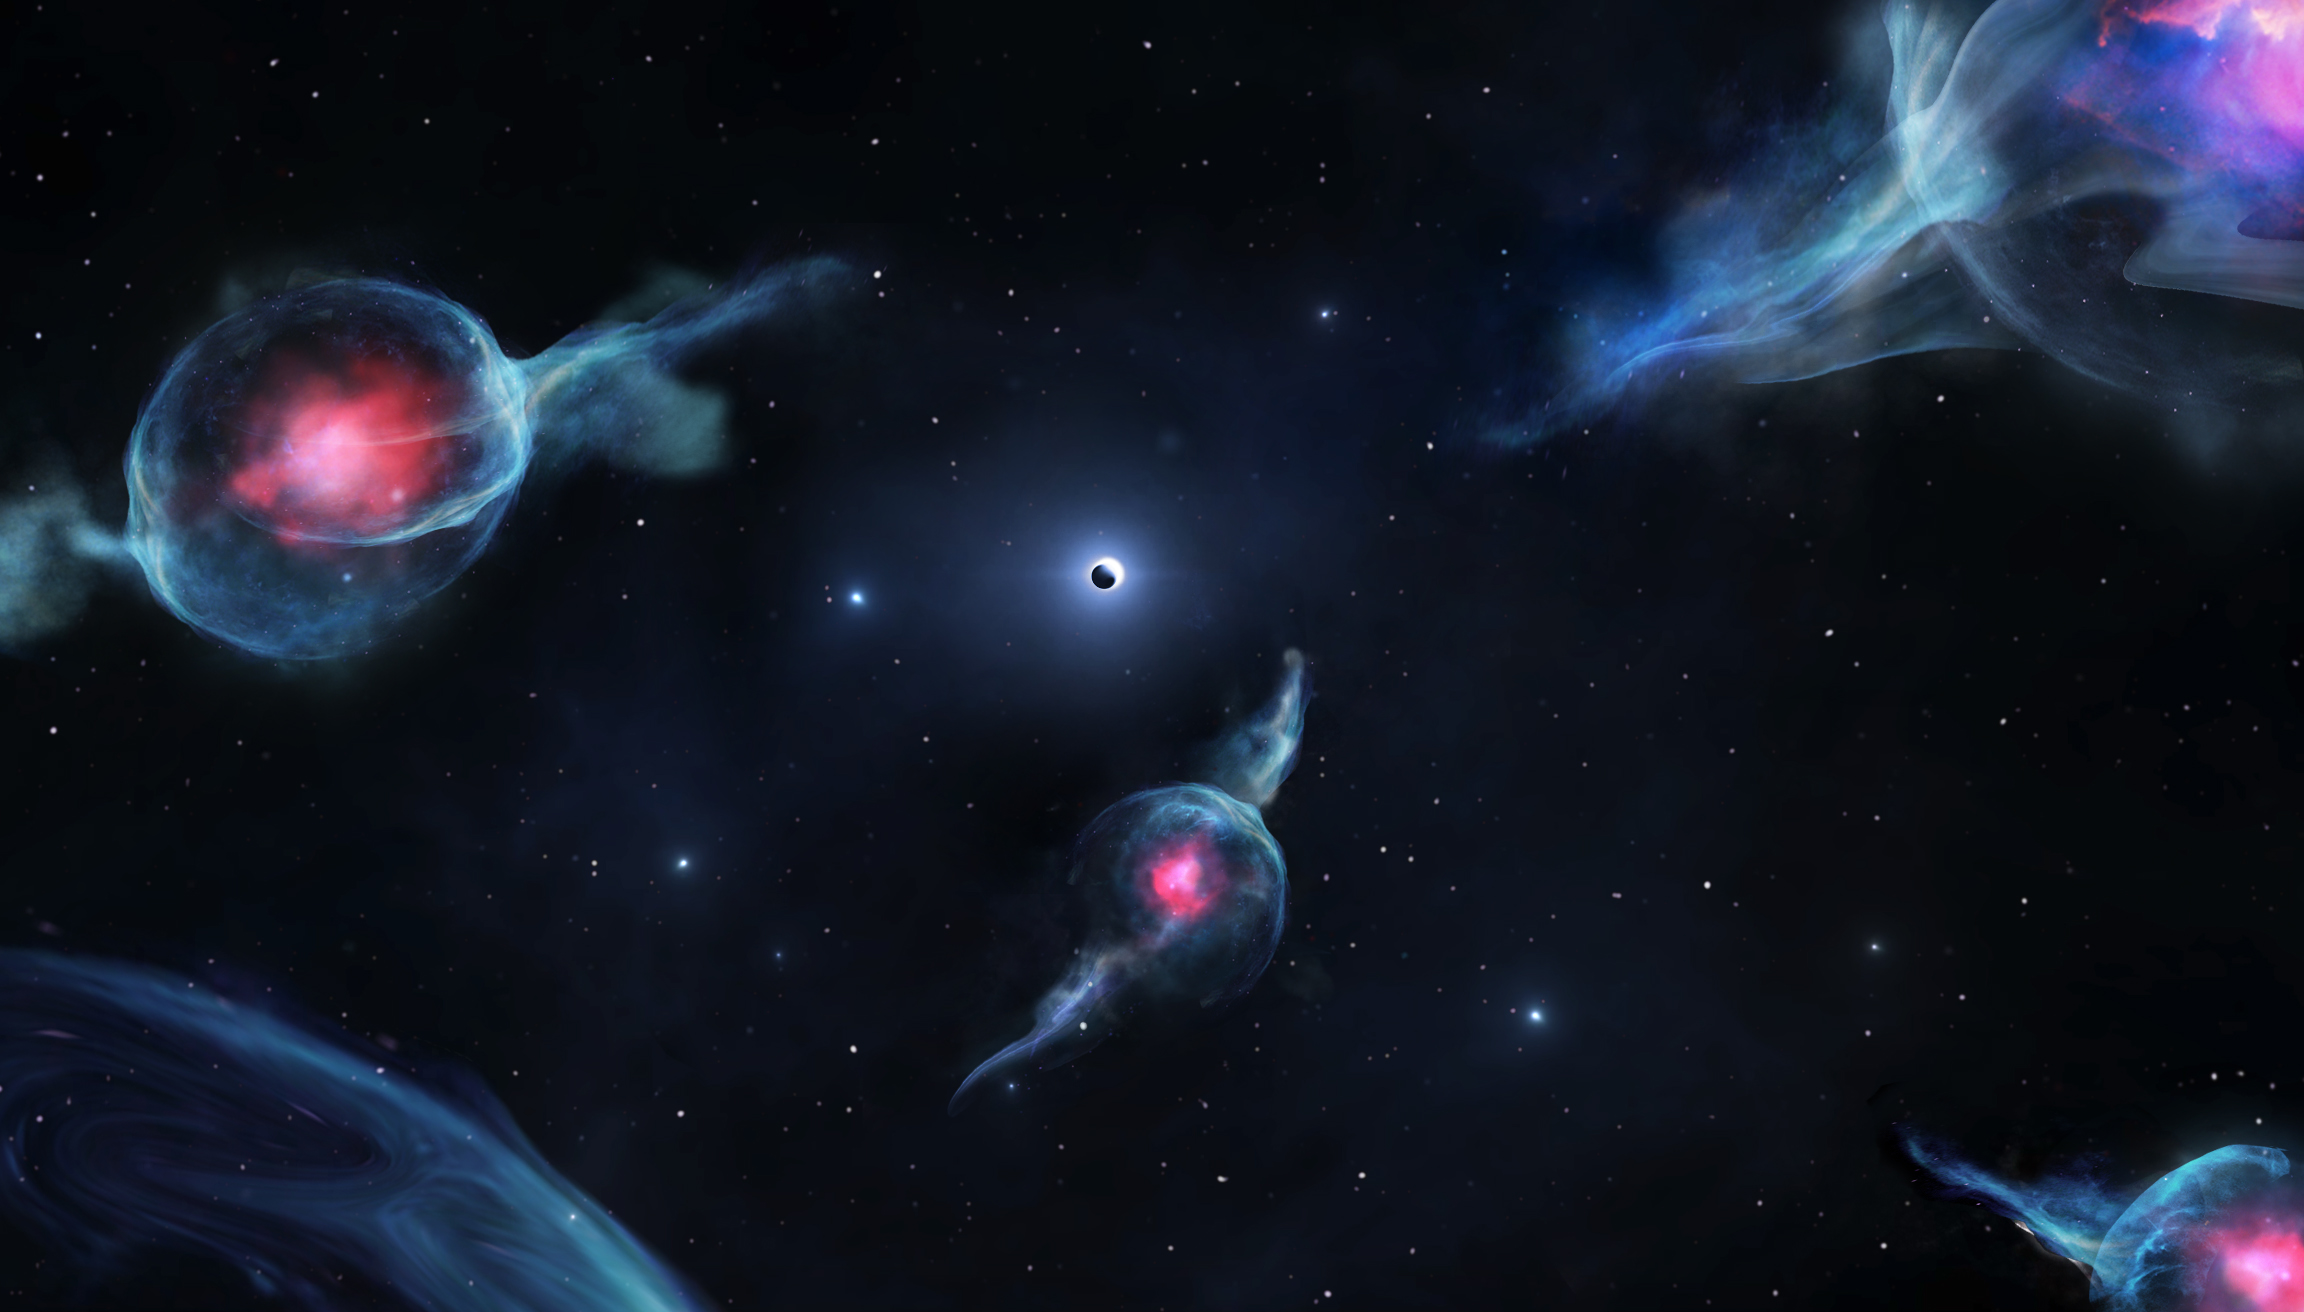 Los objetos G se muestran en esta creación artística con los centros rojizos orbitando Sagitario A*. Este agujero negro supermasivo se representa como una esfera oscura dentro de un anillo blanco, en el centro de la imagen. Crédito: Jack Ciurlo. UCLA.